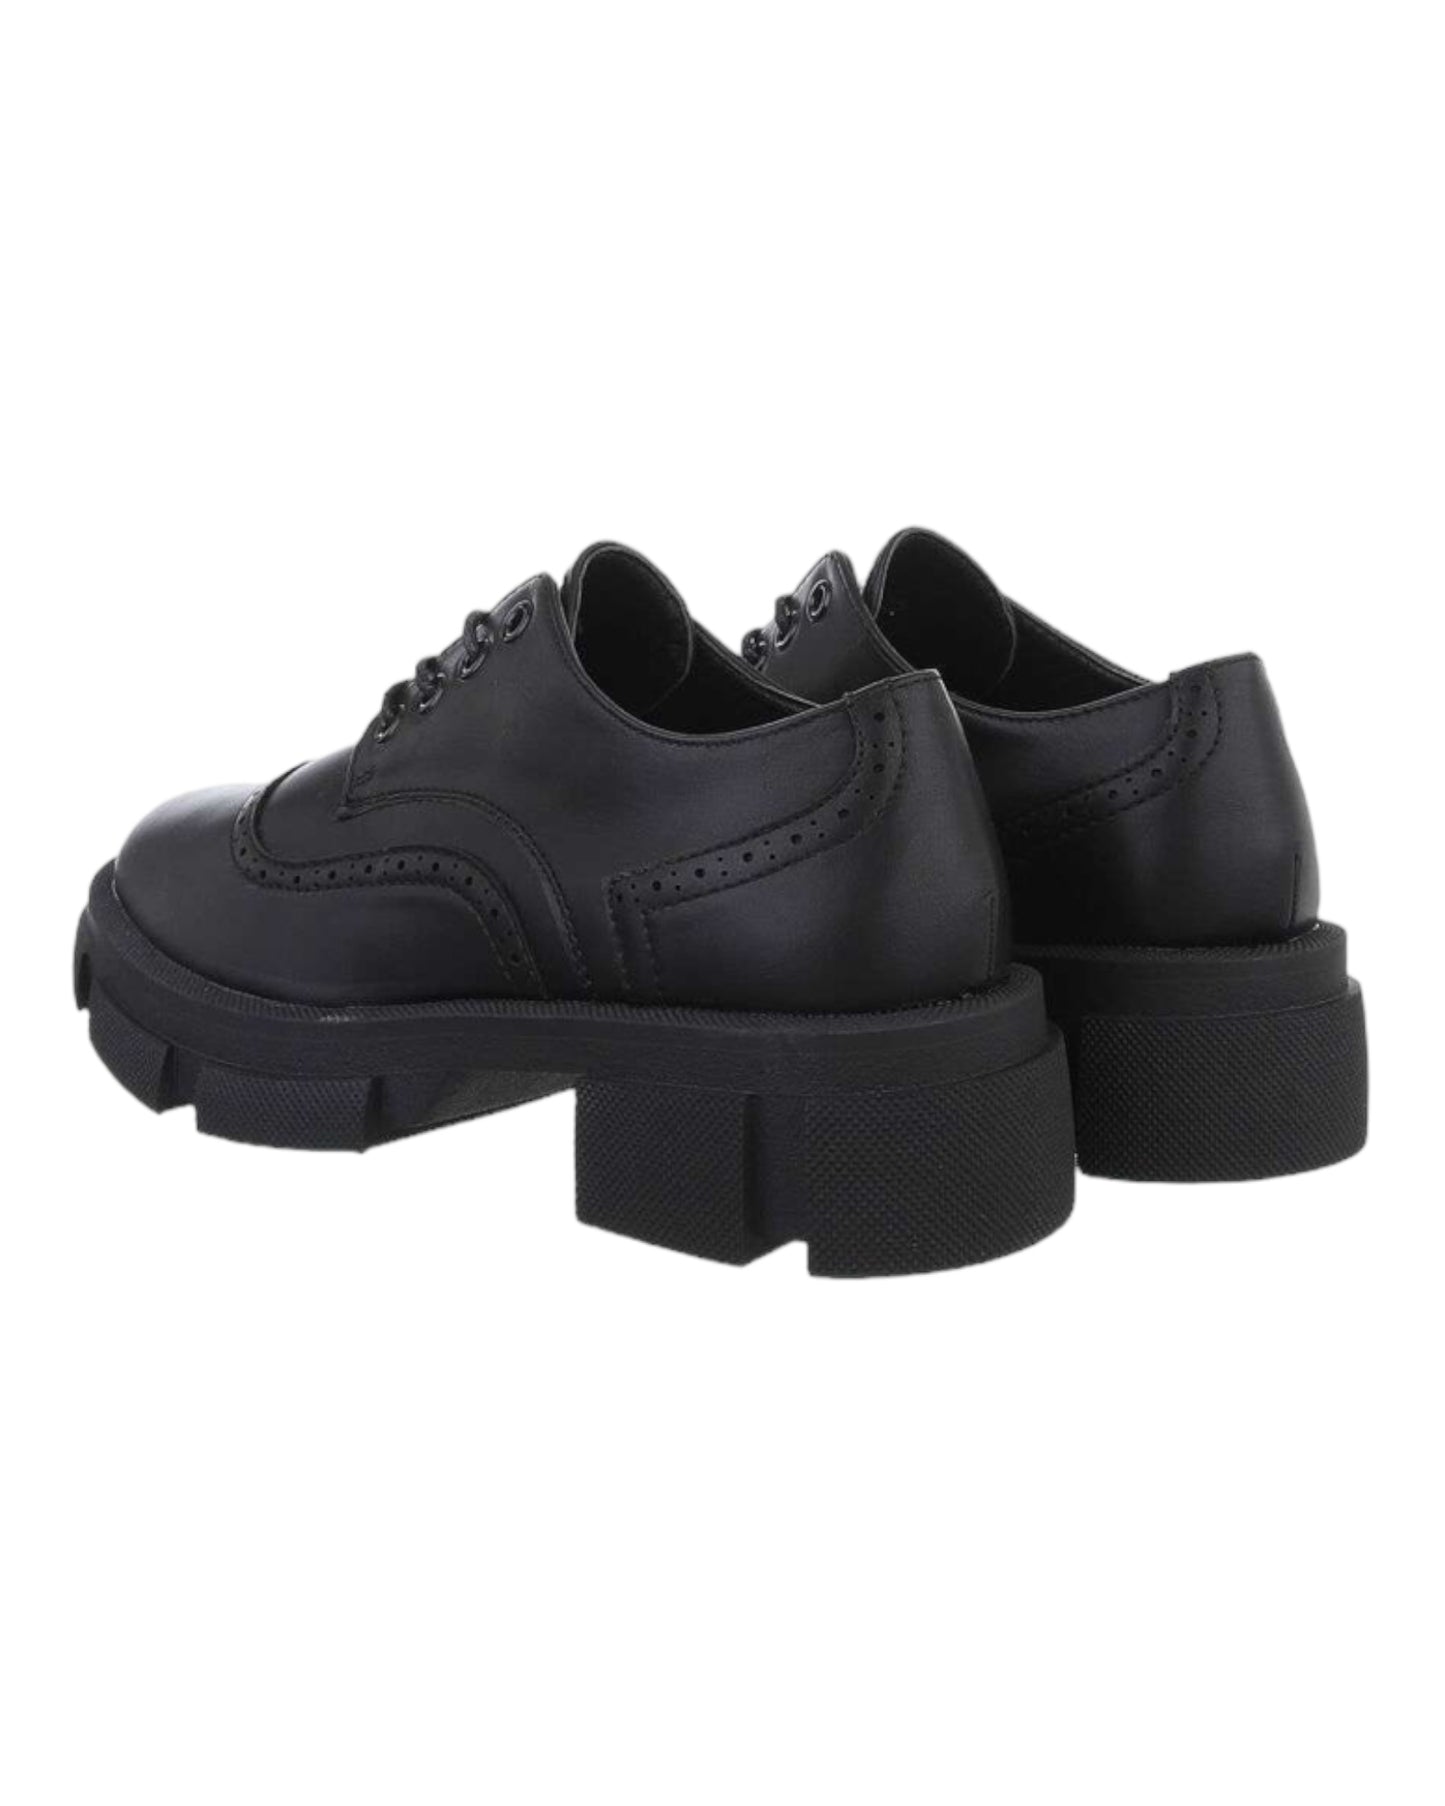 Chaussures basses Noir à semelles compensés - NuptiaLove